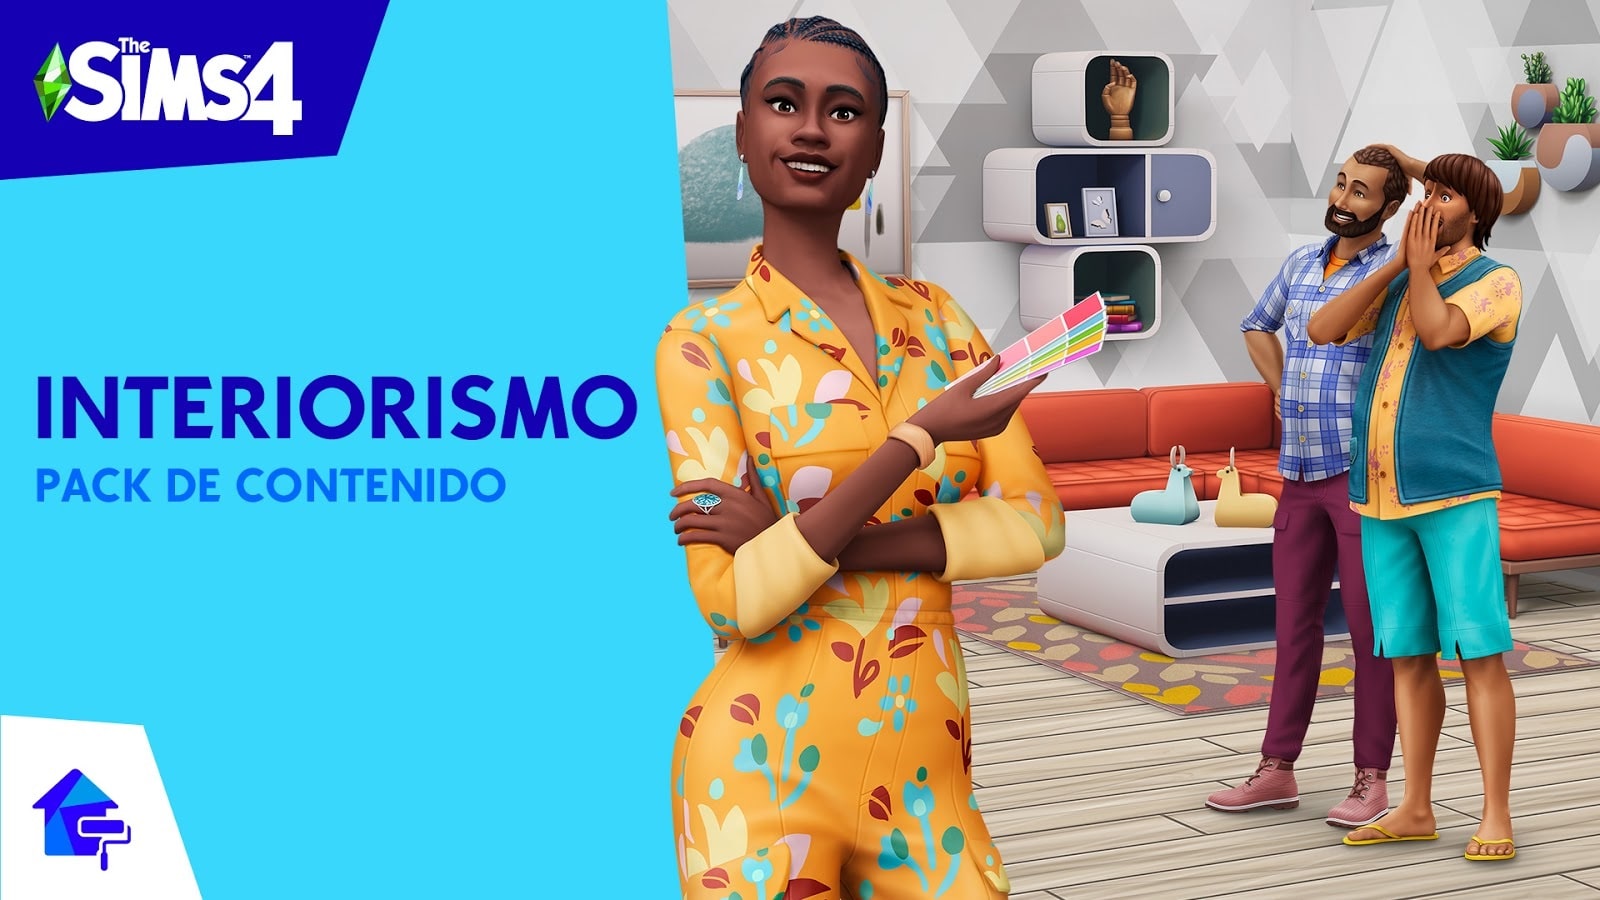 Los Sims 4 Interiorismo ya está disponible, GamersRD